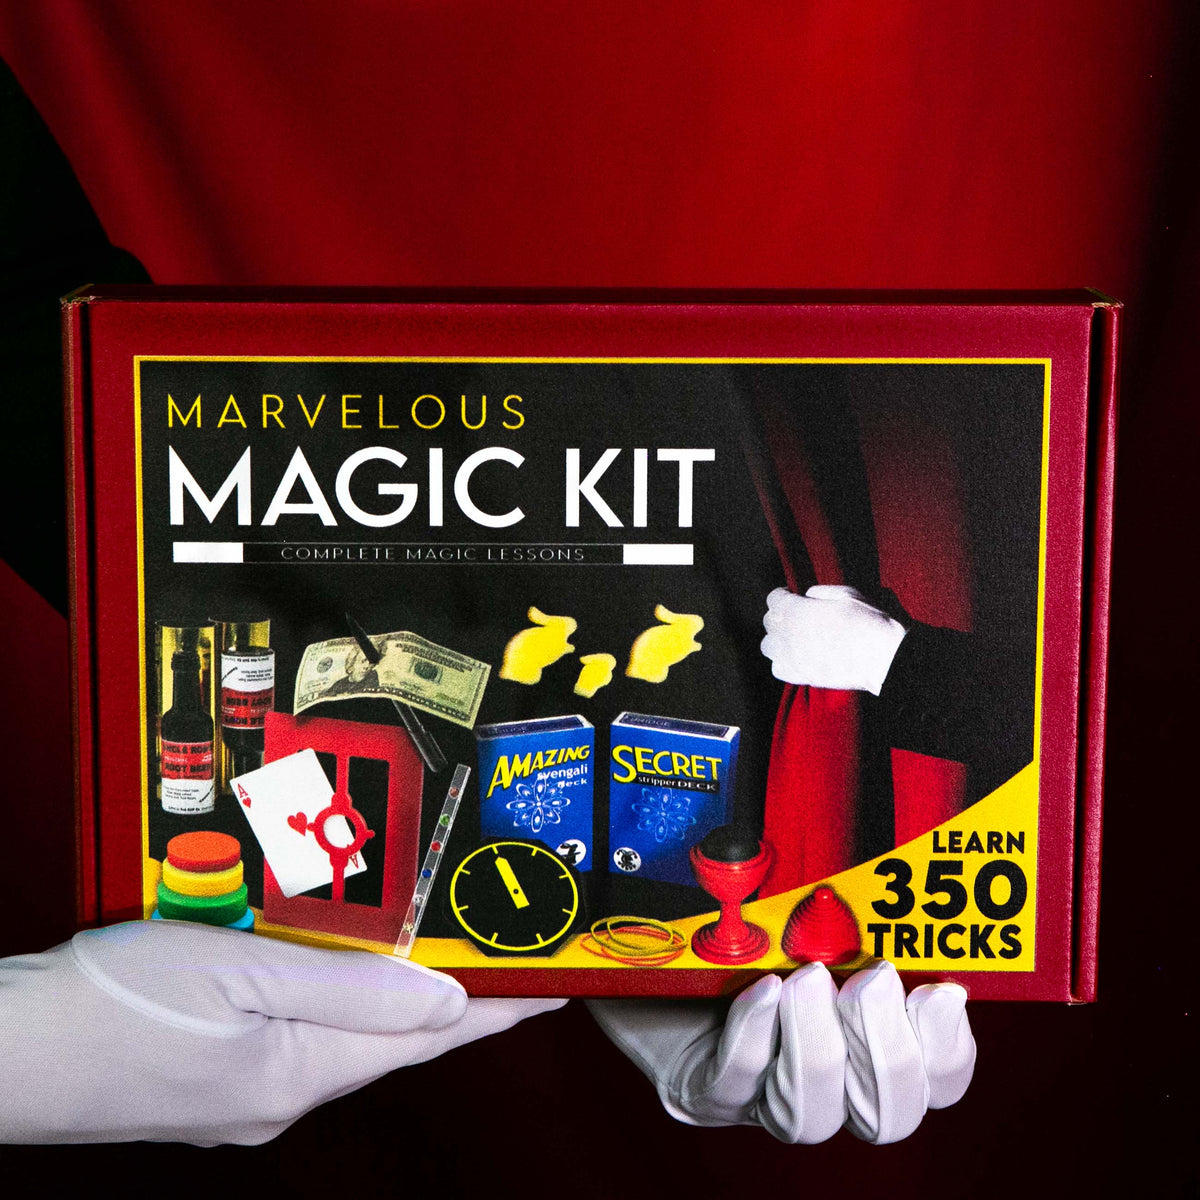 Magic Makers Marvelous Magic Kit